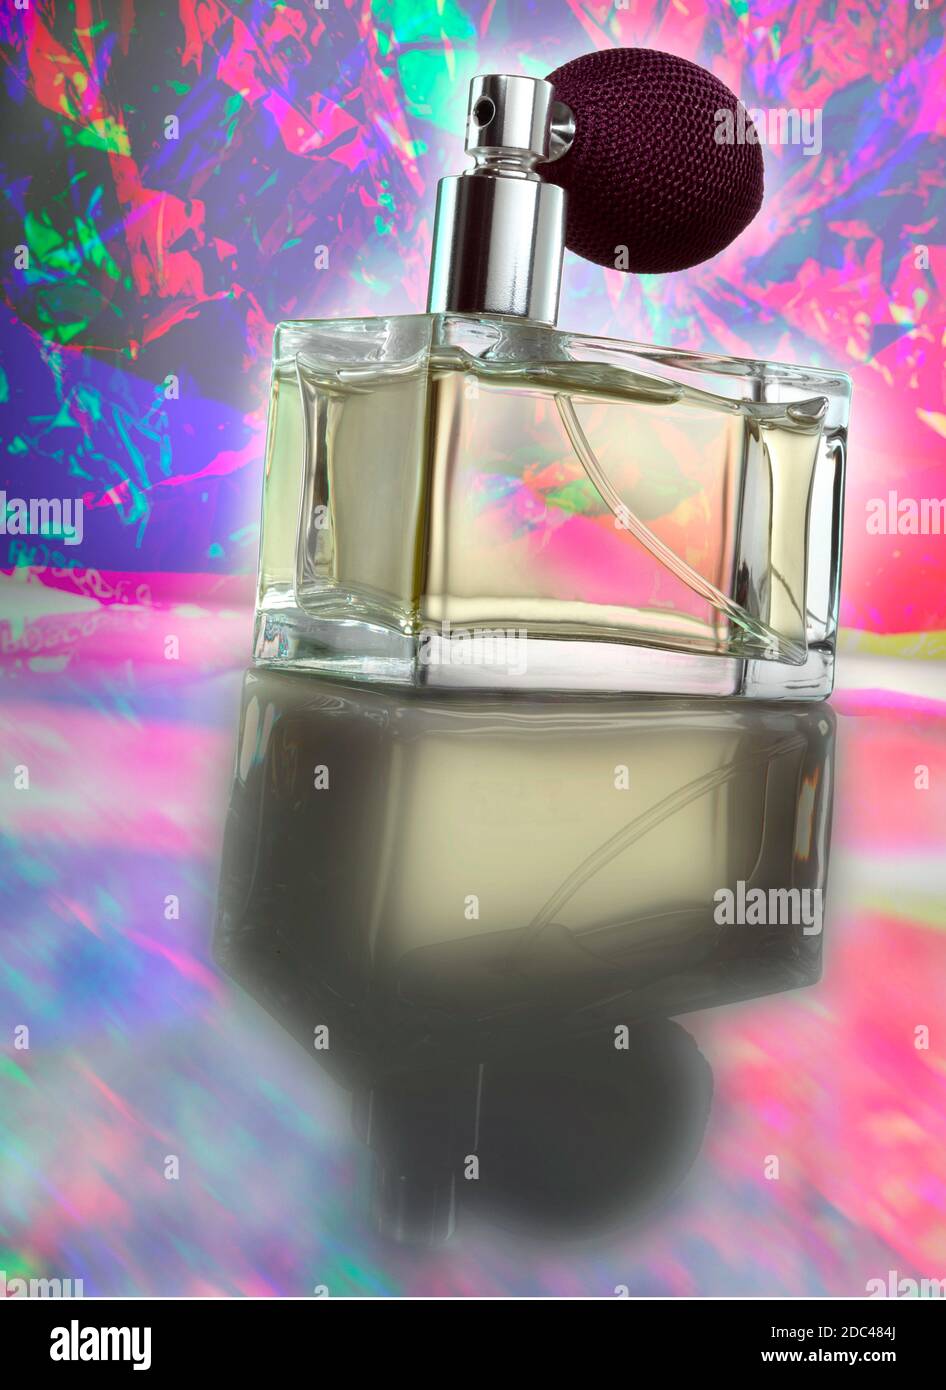 Flacone di profumo in vetro con spray a bulbo atomizzatore. Fotografato a un angolo basso con un'illuminazione spettacolare e uno sfondo psichedelico e colorato. Foto Stock